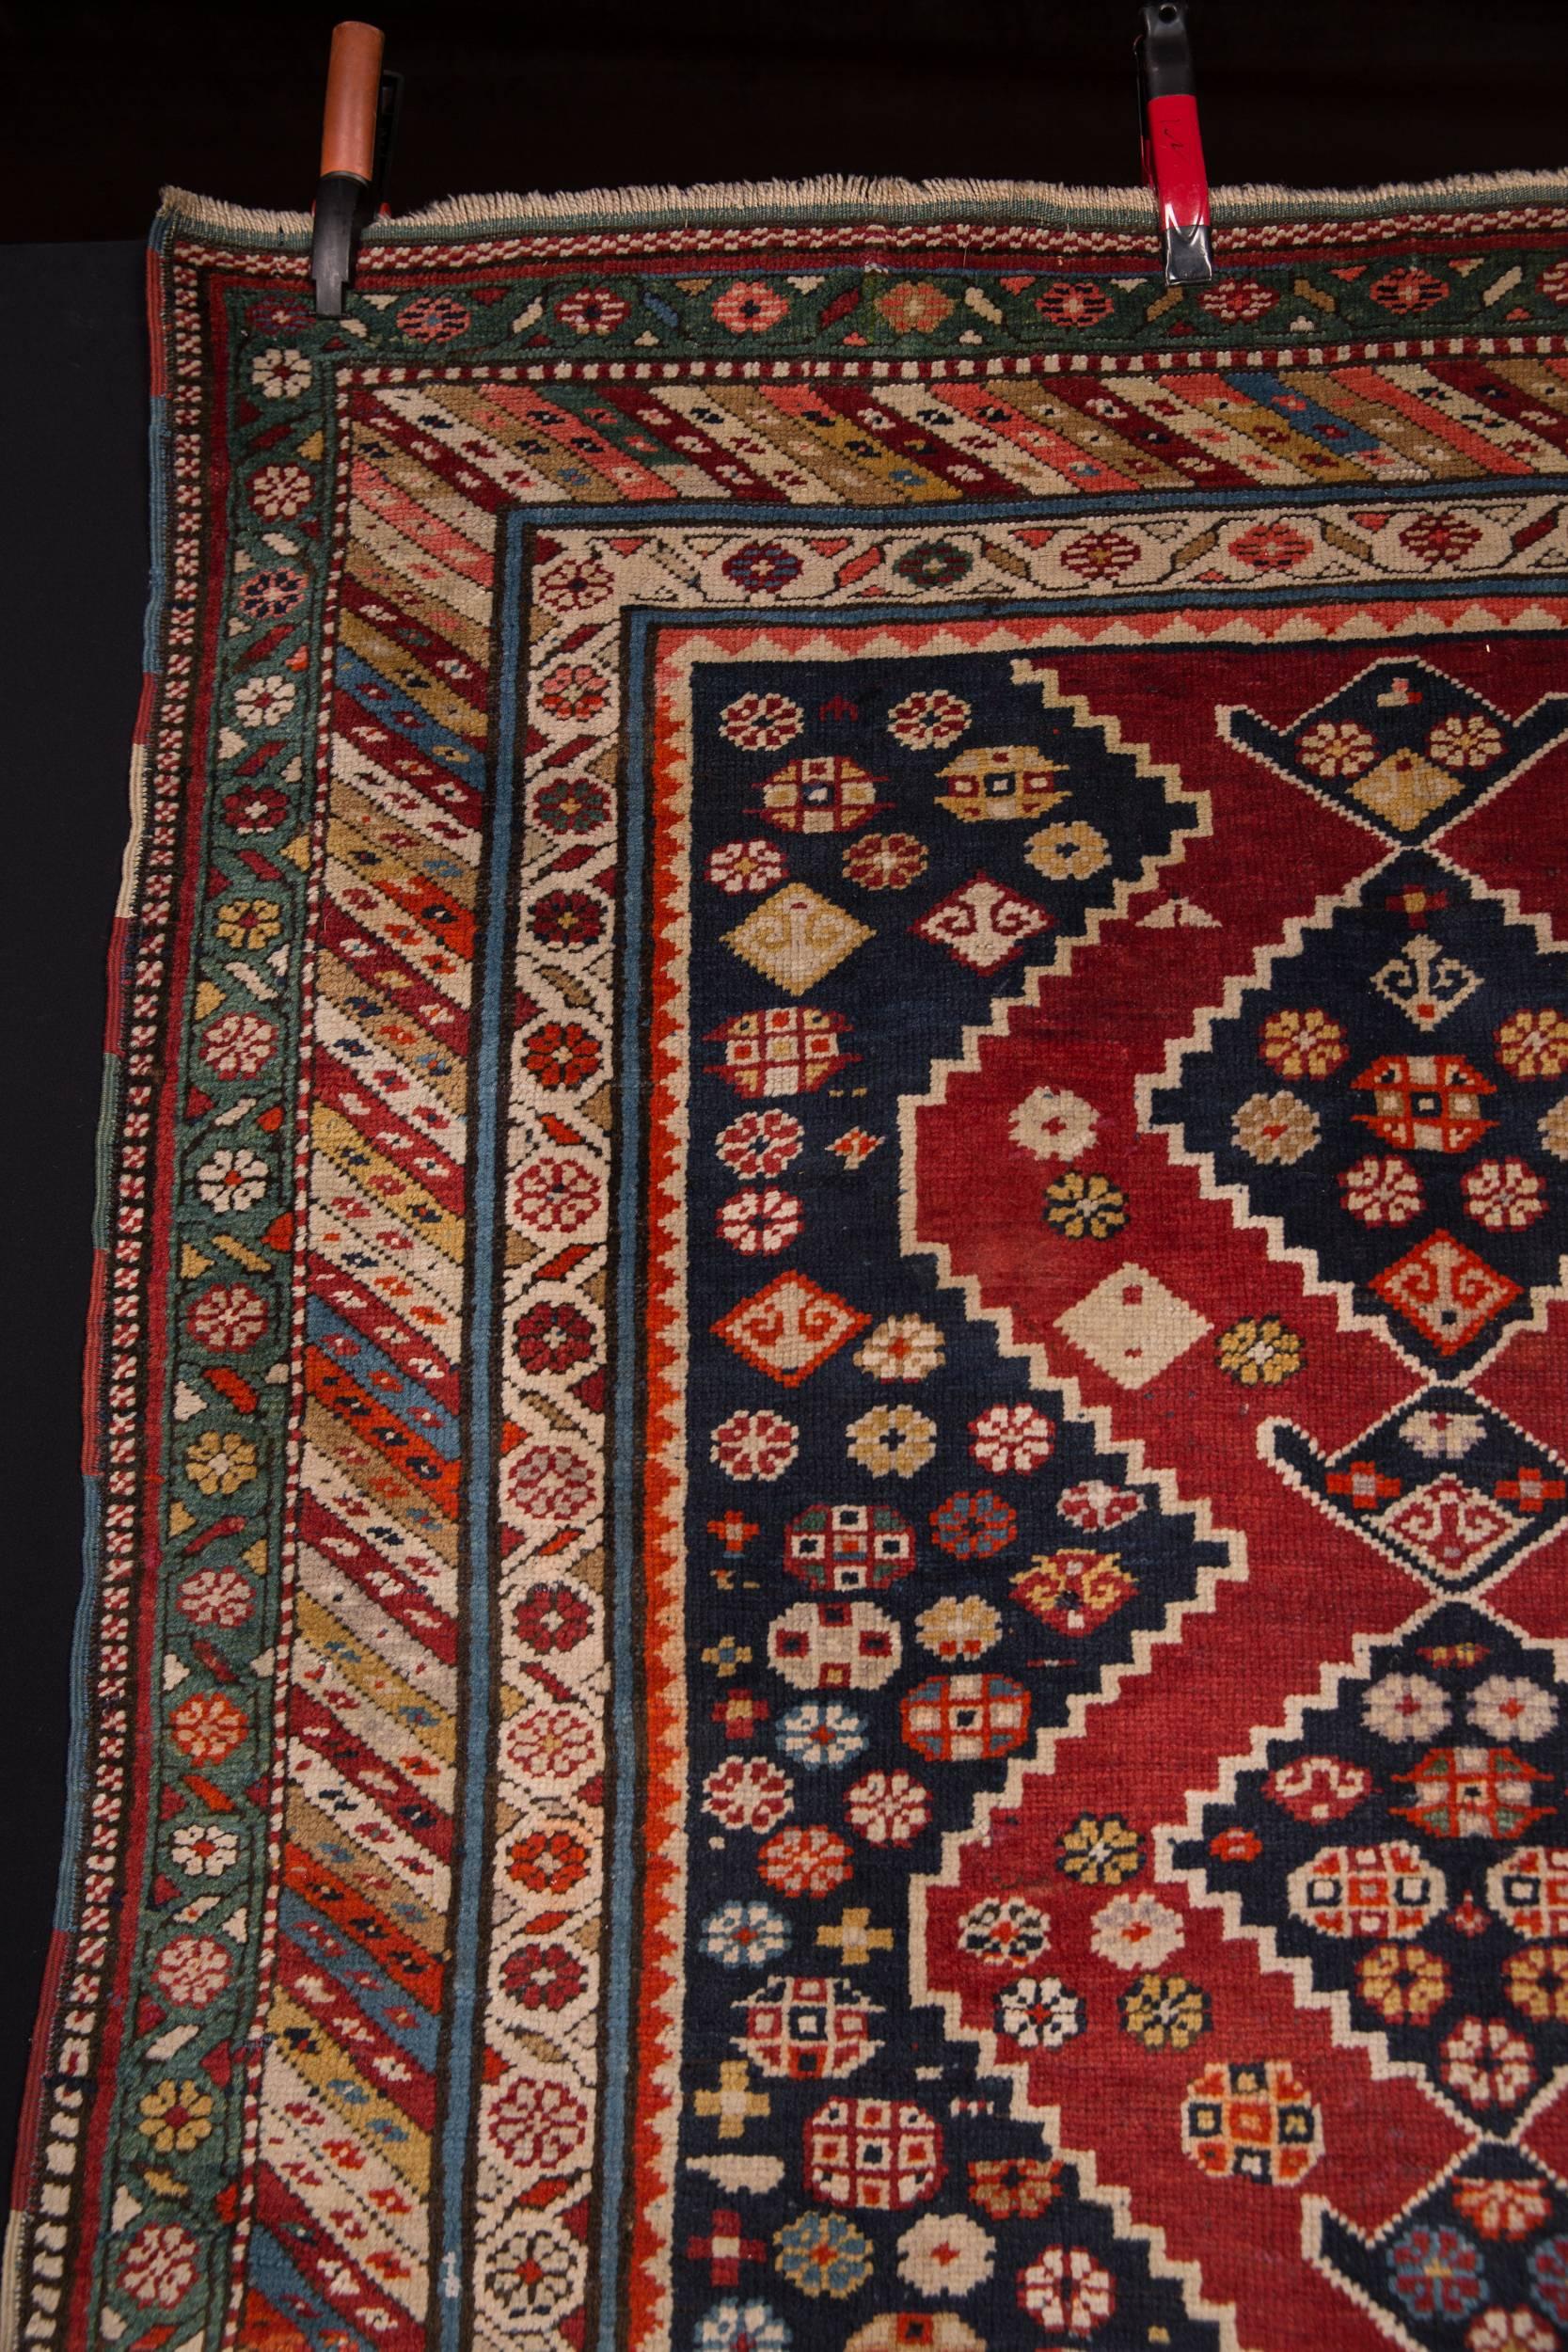 Antique rare Kazak carpet. Good historical condition. See detail pictures. Measures: 230 cm x125 cm.